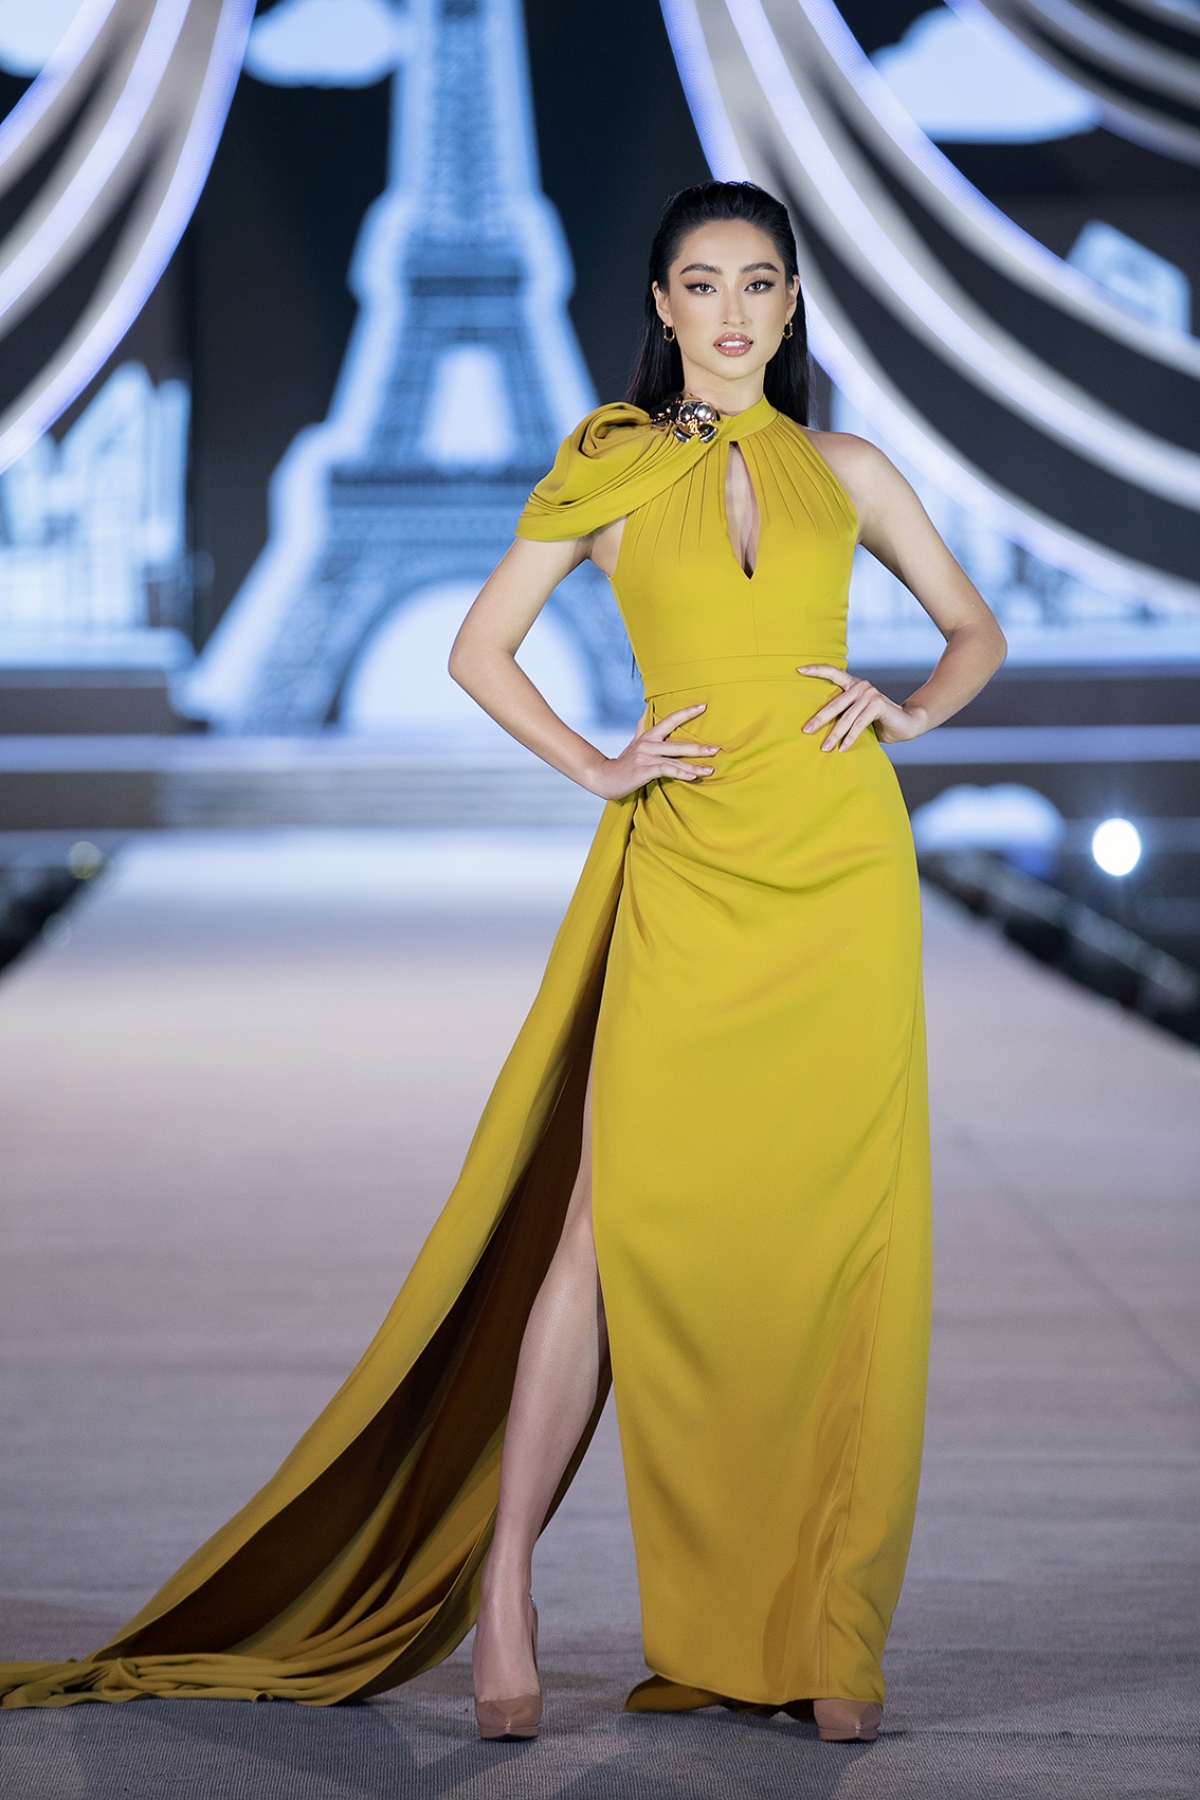 Hoa hậu Lương Thùy Linh bất ngờ trở thành mentor The Next Face Vietnam 2021 - Ảnh 1.